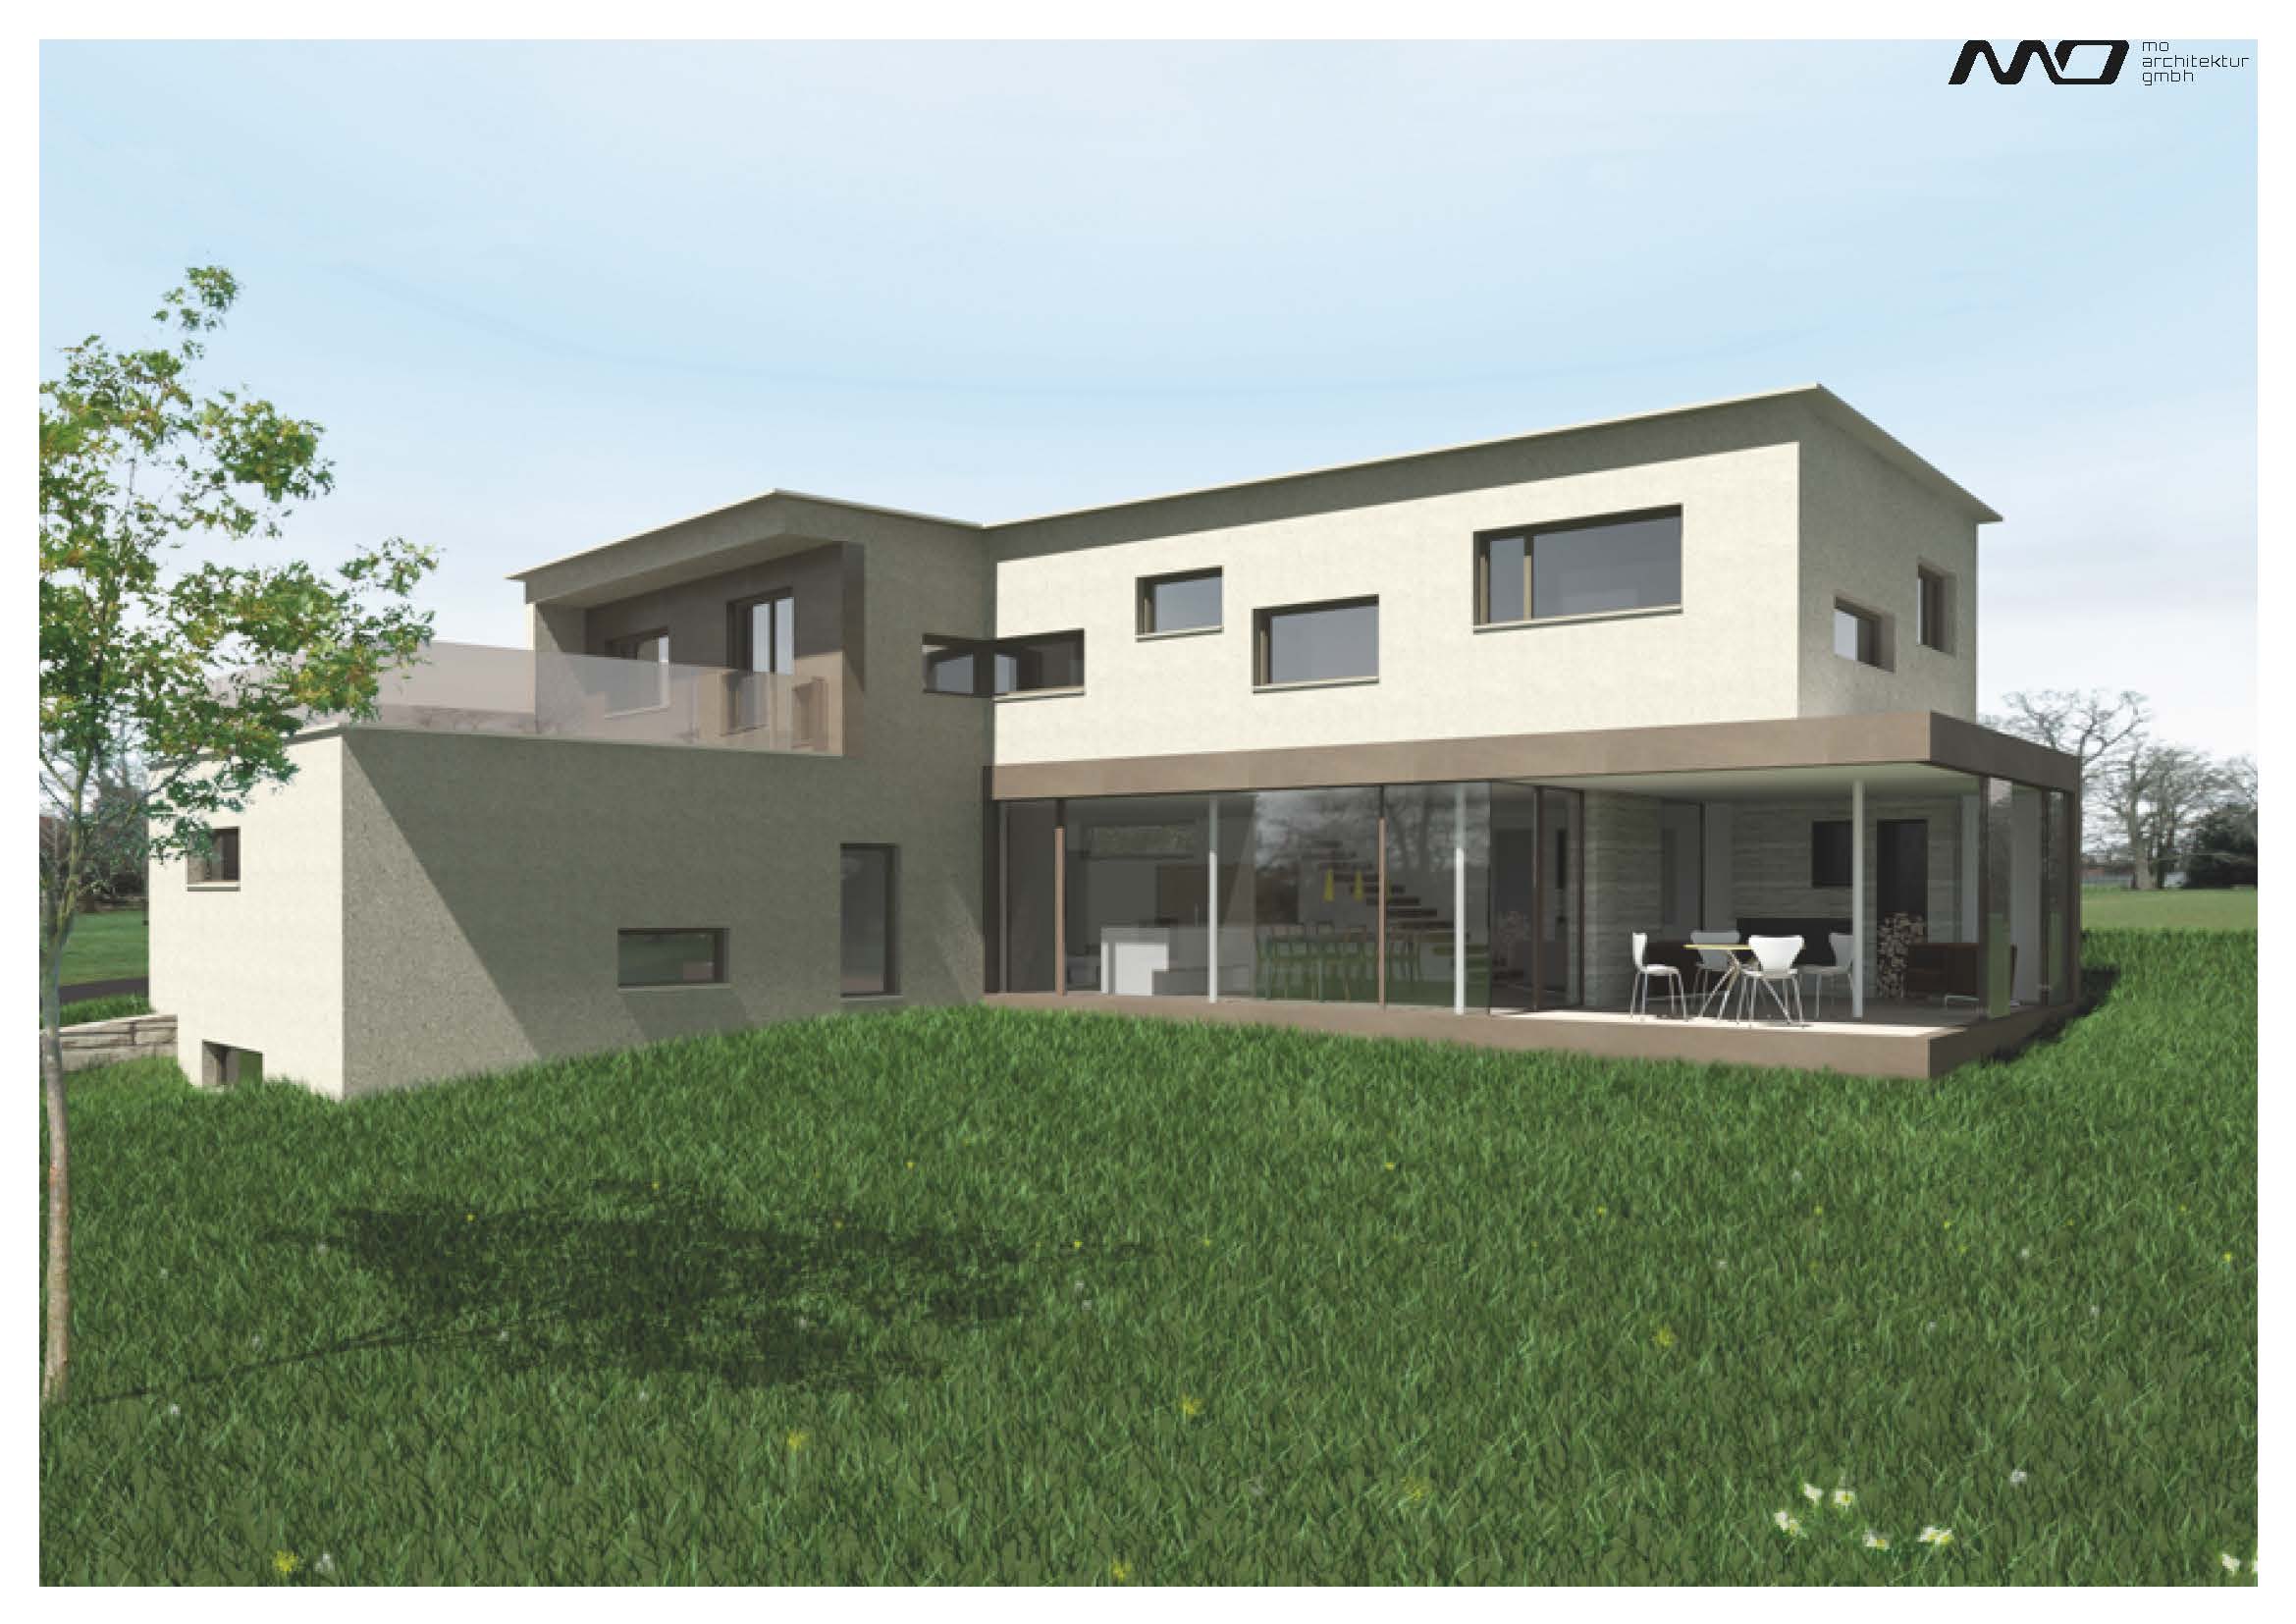 Konzept_MO-Architektur-Uznach-Linthgebiet-Ostschweiz_Visualisierung